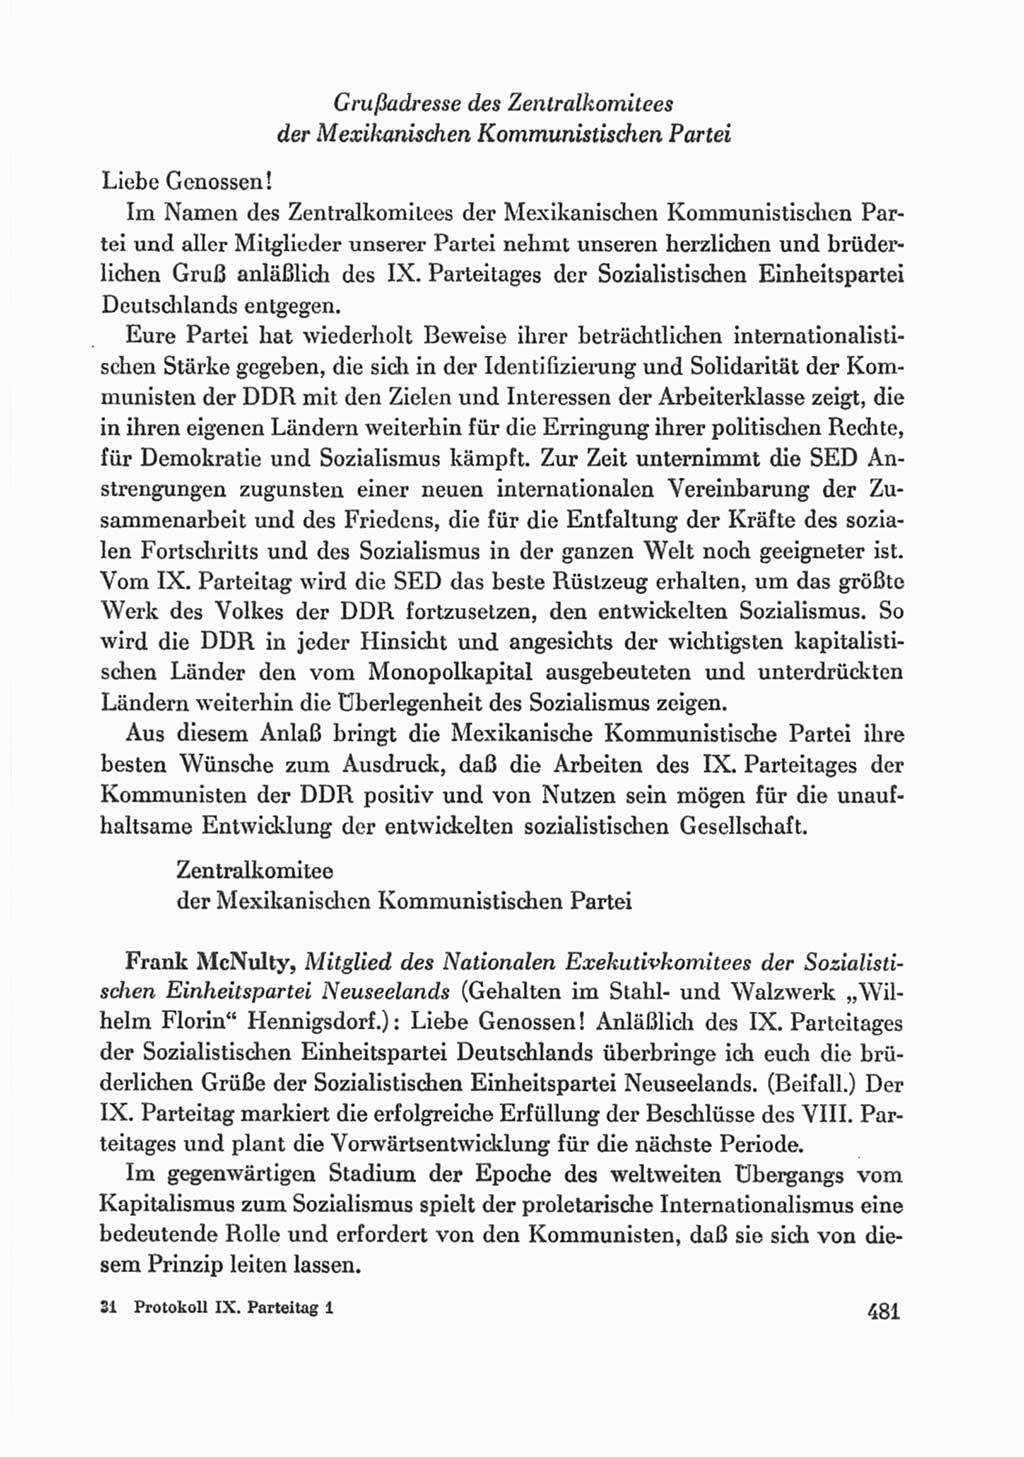 Protokoll der Verhandlungen des Ⅸ. Parteitages der Sozialistischen Einheitspartei Deutschlands (SED) [Deutsche Demokratische Republik (DDR)] 1976, Band 1, Seite 481 (Prot. Verh. Ⅸ. PT SED DDR 1976, Bd. 1, S. 481)